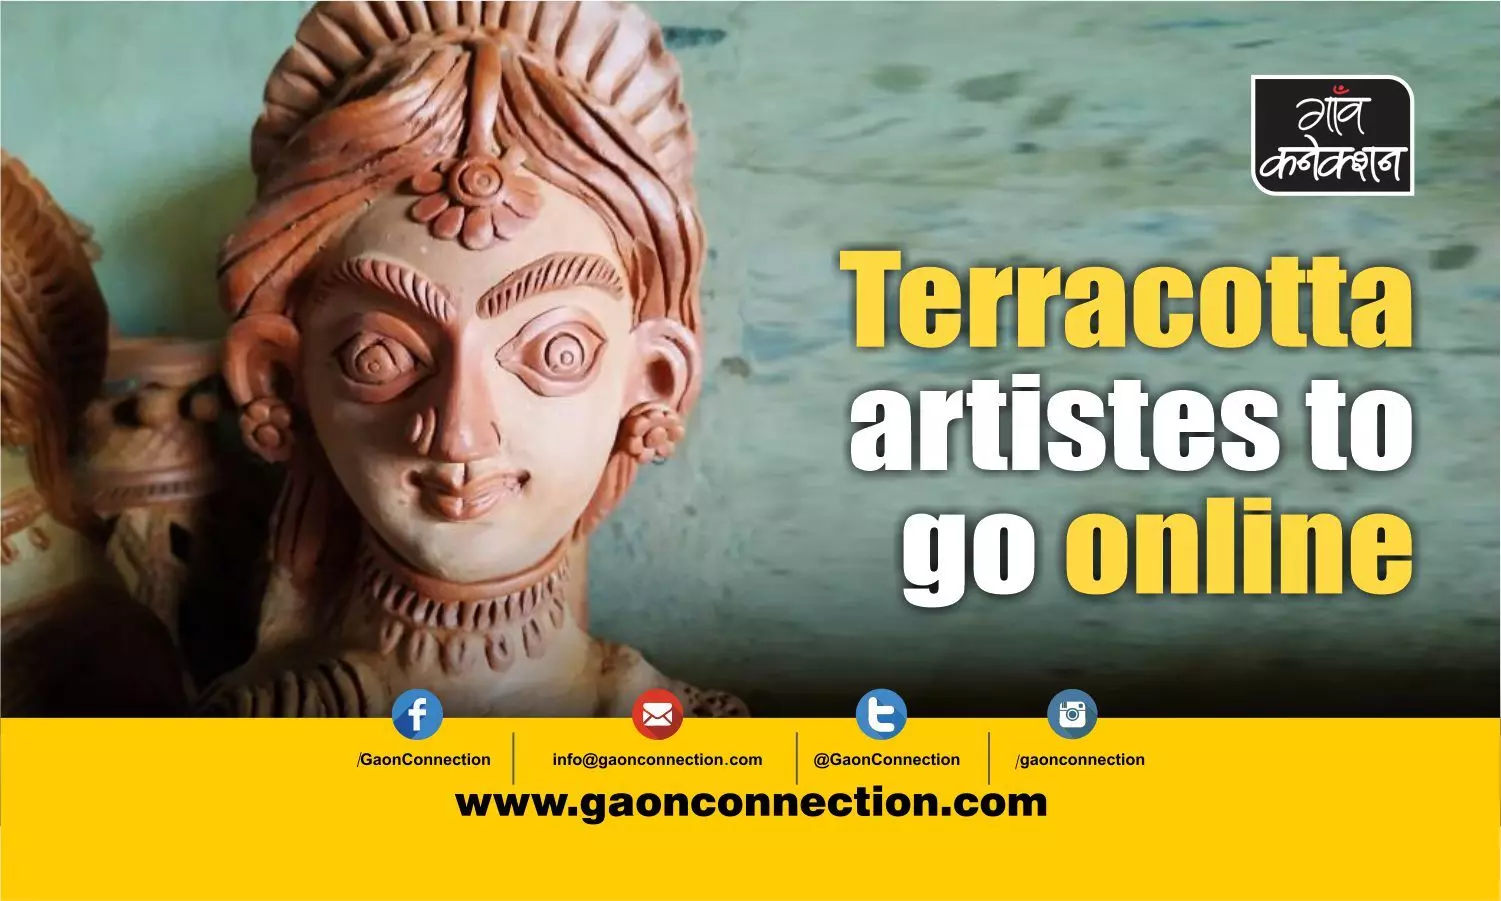 Terracotta artistes may soon get an online market